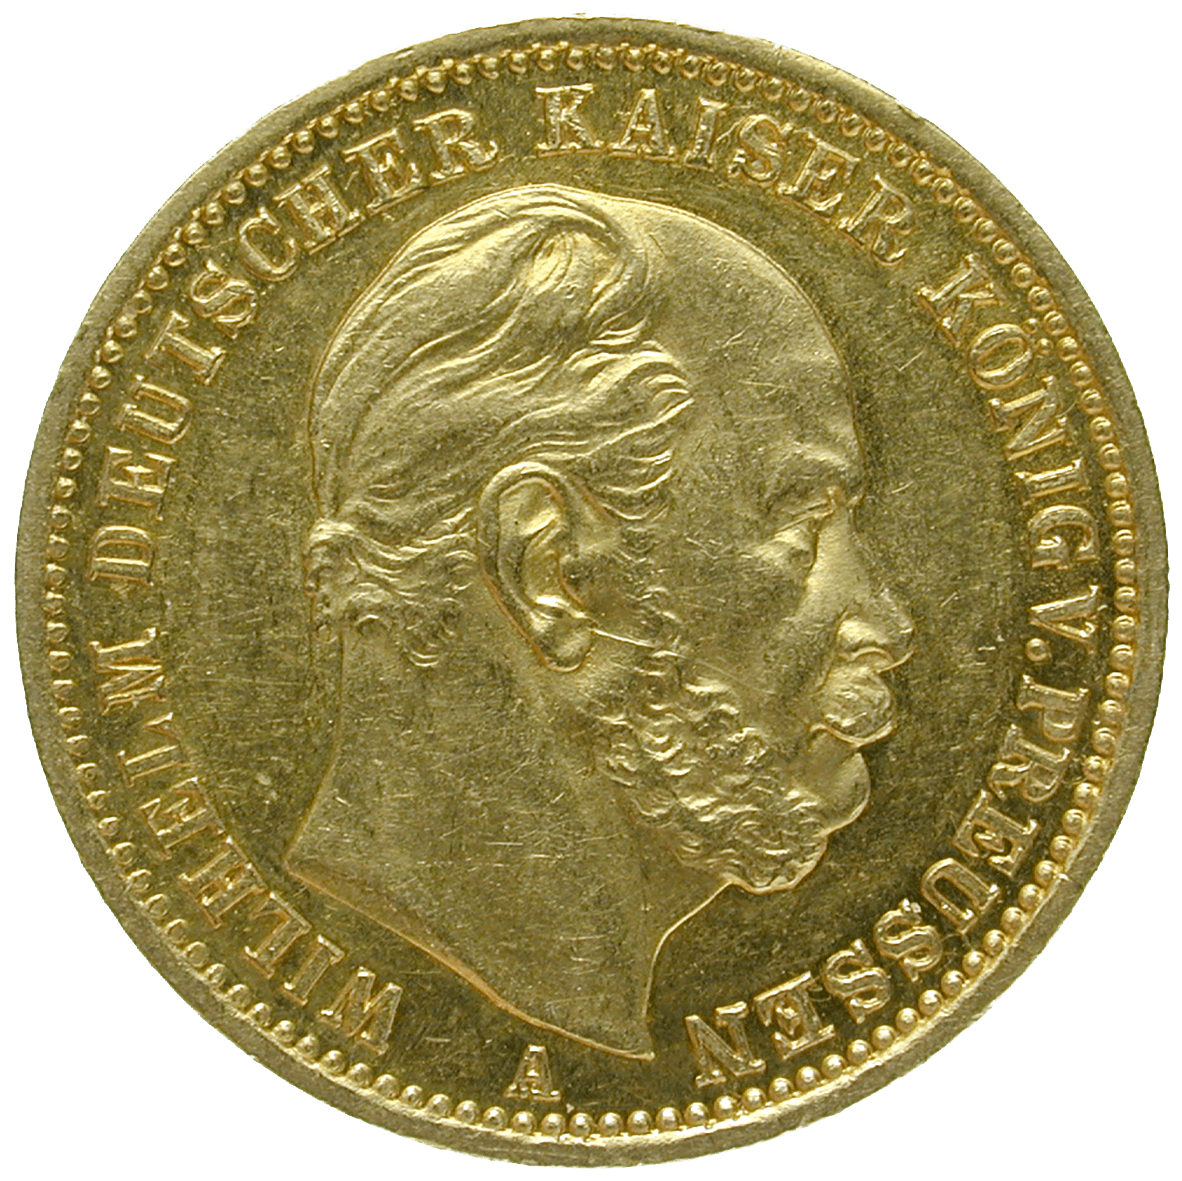 Deutsches Kaiserreich, Wilhelm I., 20 Mark 1872 (obverse)